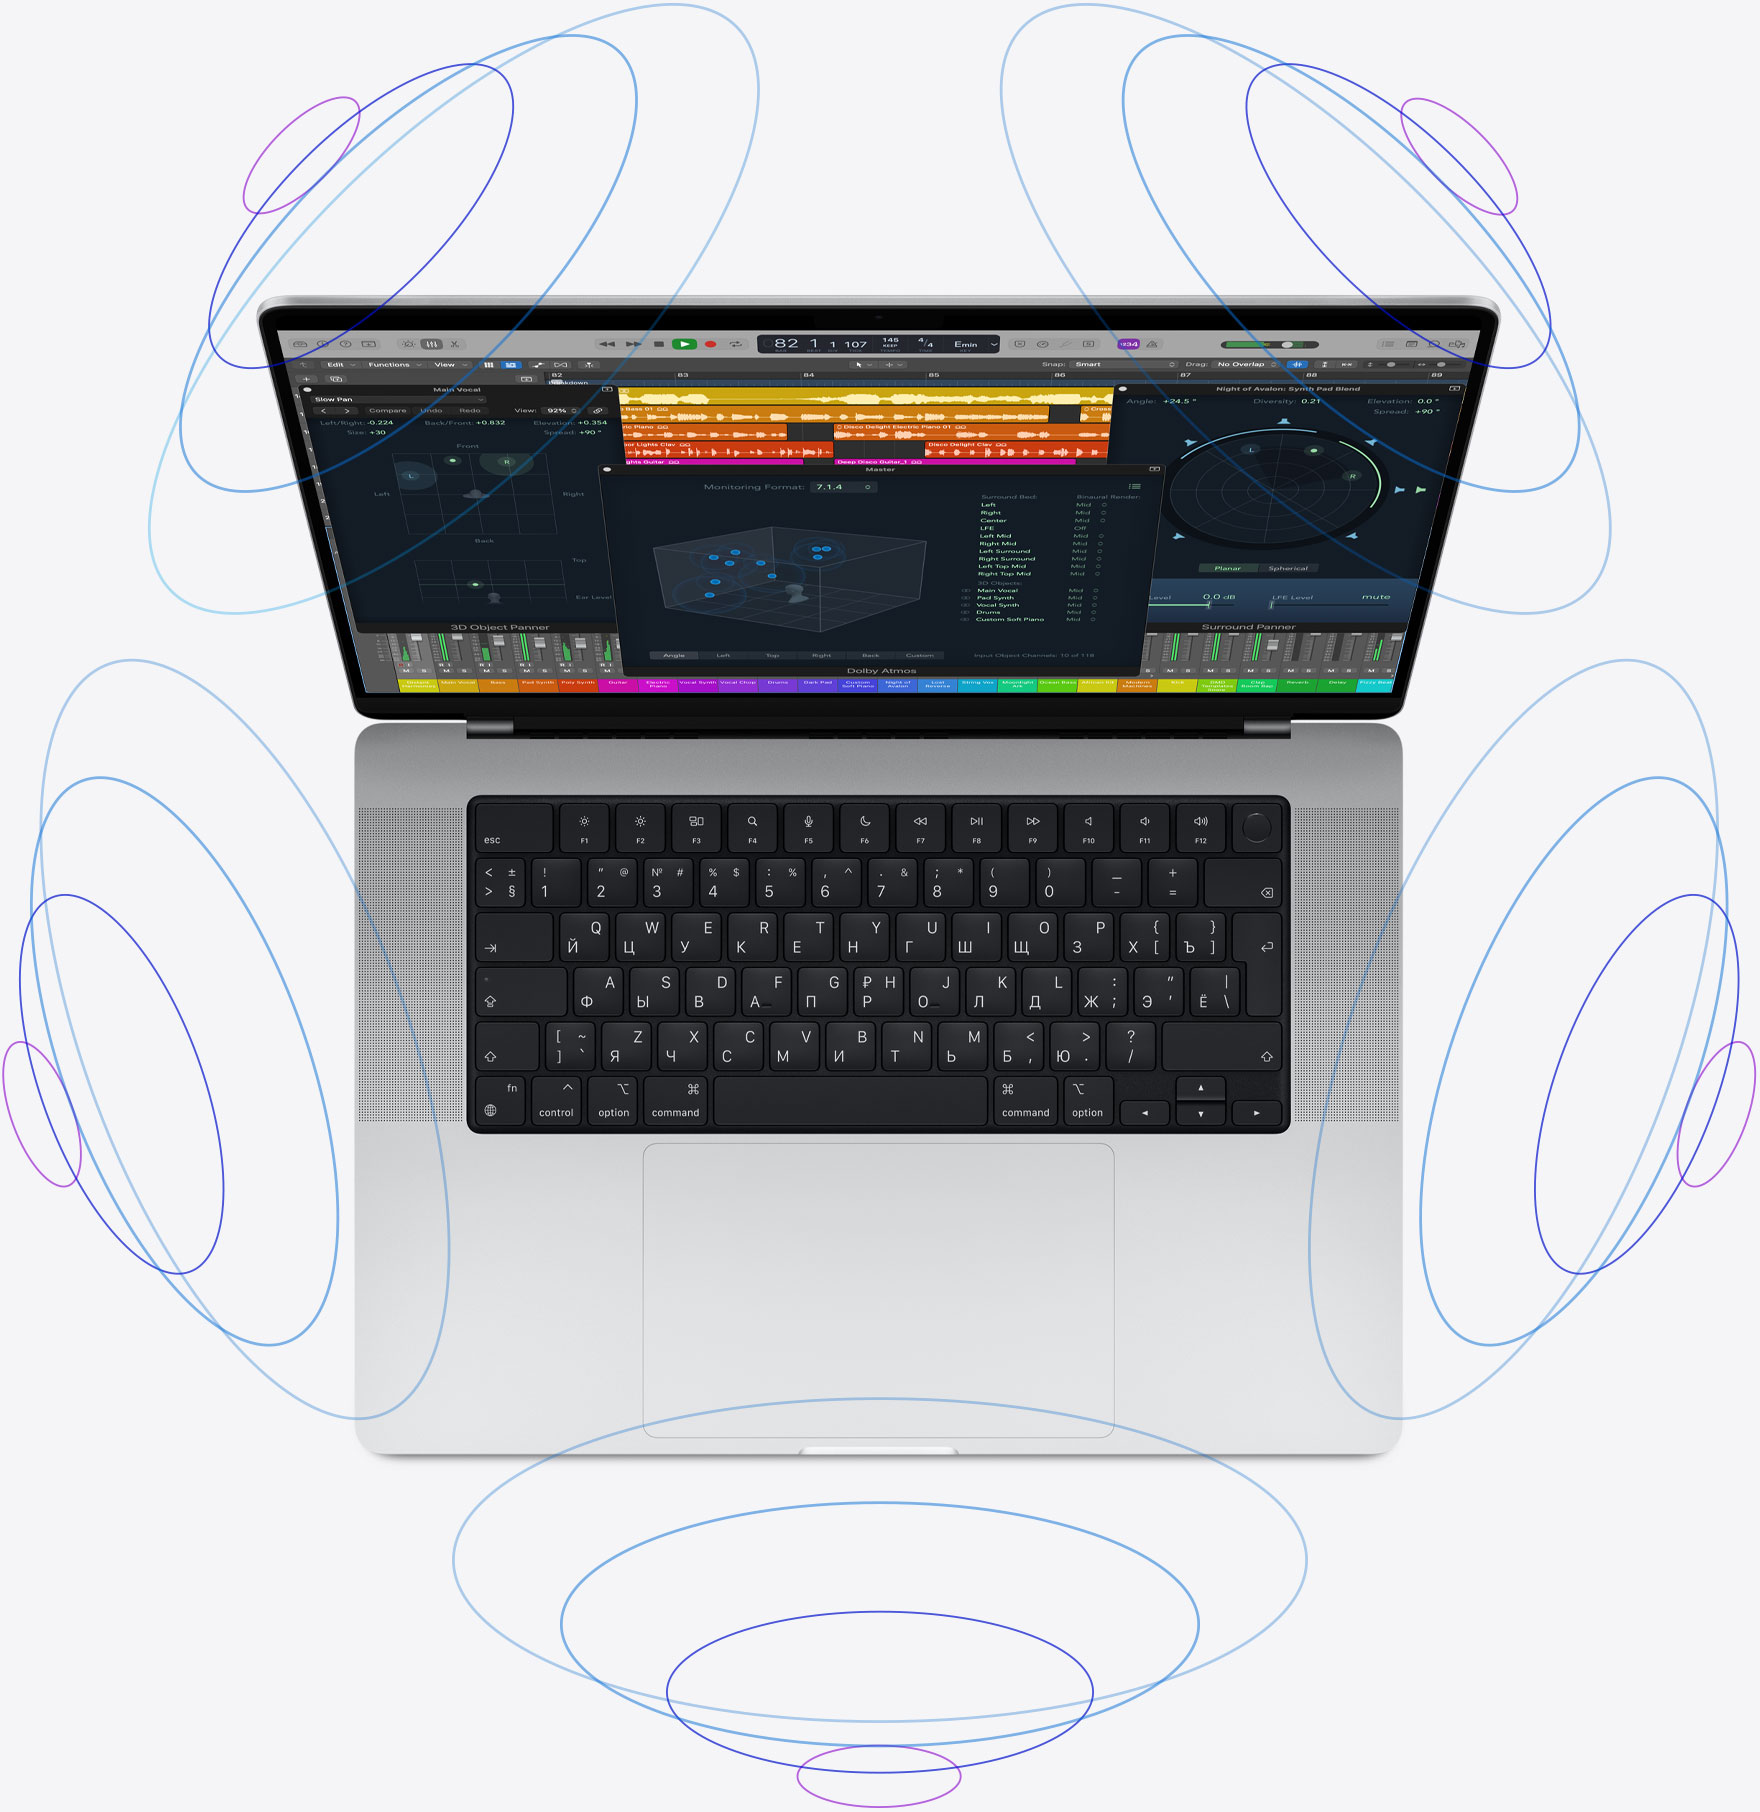 Самый мощный MacBook Pro и AirPods с пространственным звуком: компания Apple показала новинки